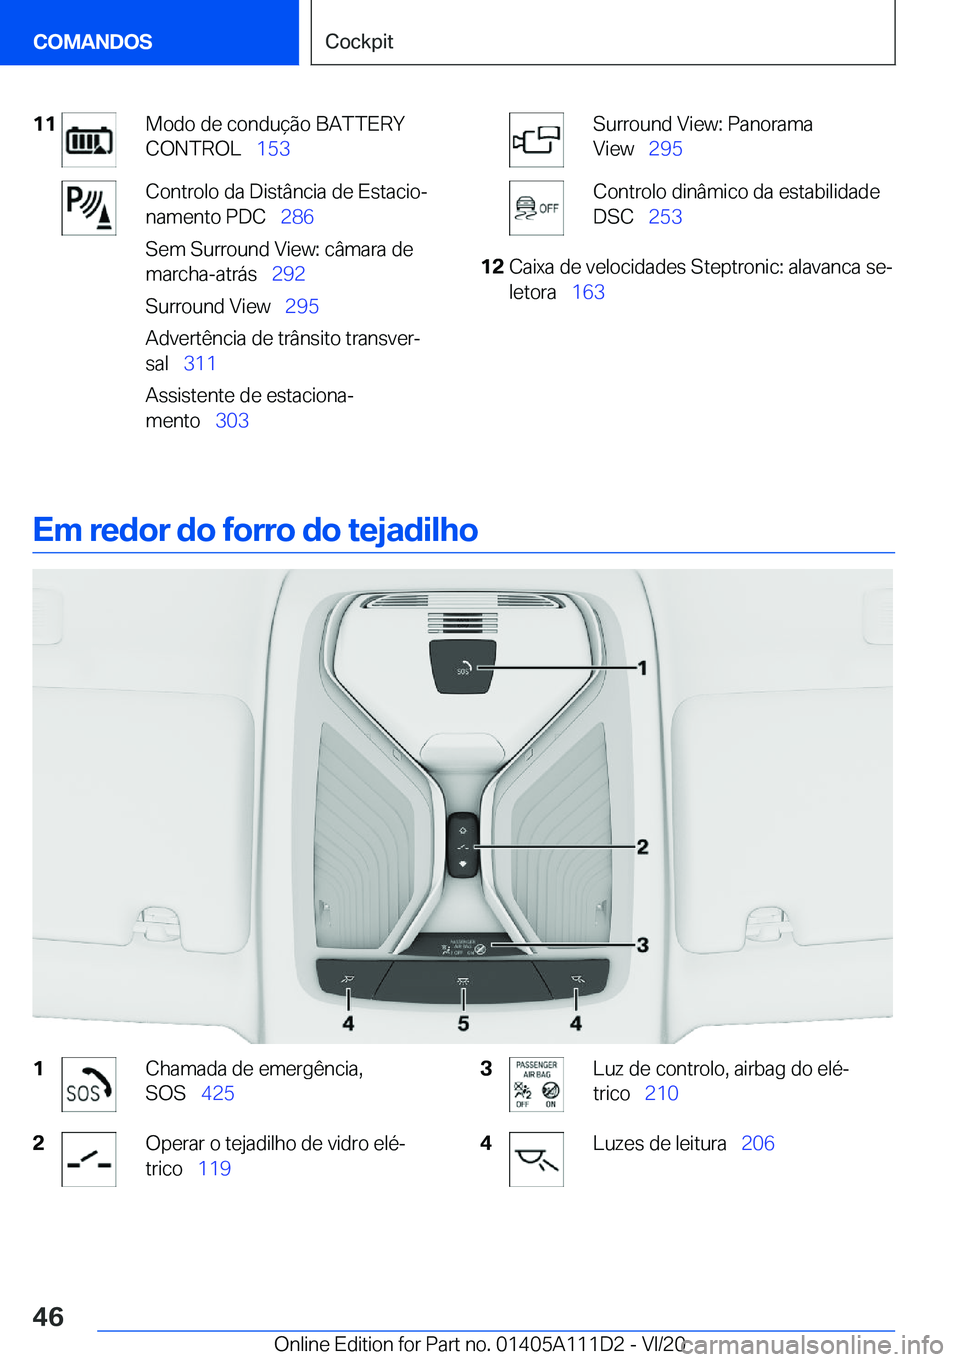 BMW 3 SERIES SEDAN PLUG-IN HYBRID 2021  Manual do condutor (in Portuguese) �1�1�M�o�d�o��d�e��c�o�n�d�u�